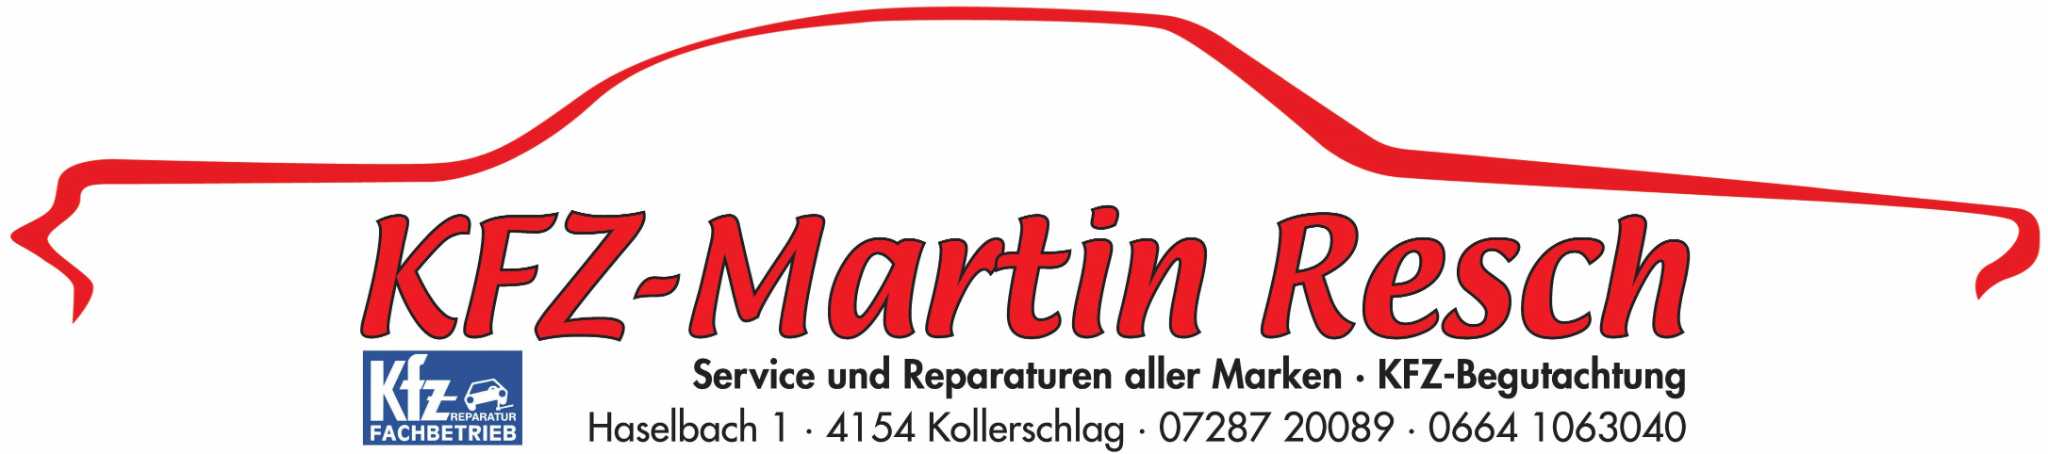 KFZ Martin Resch